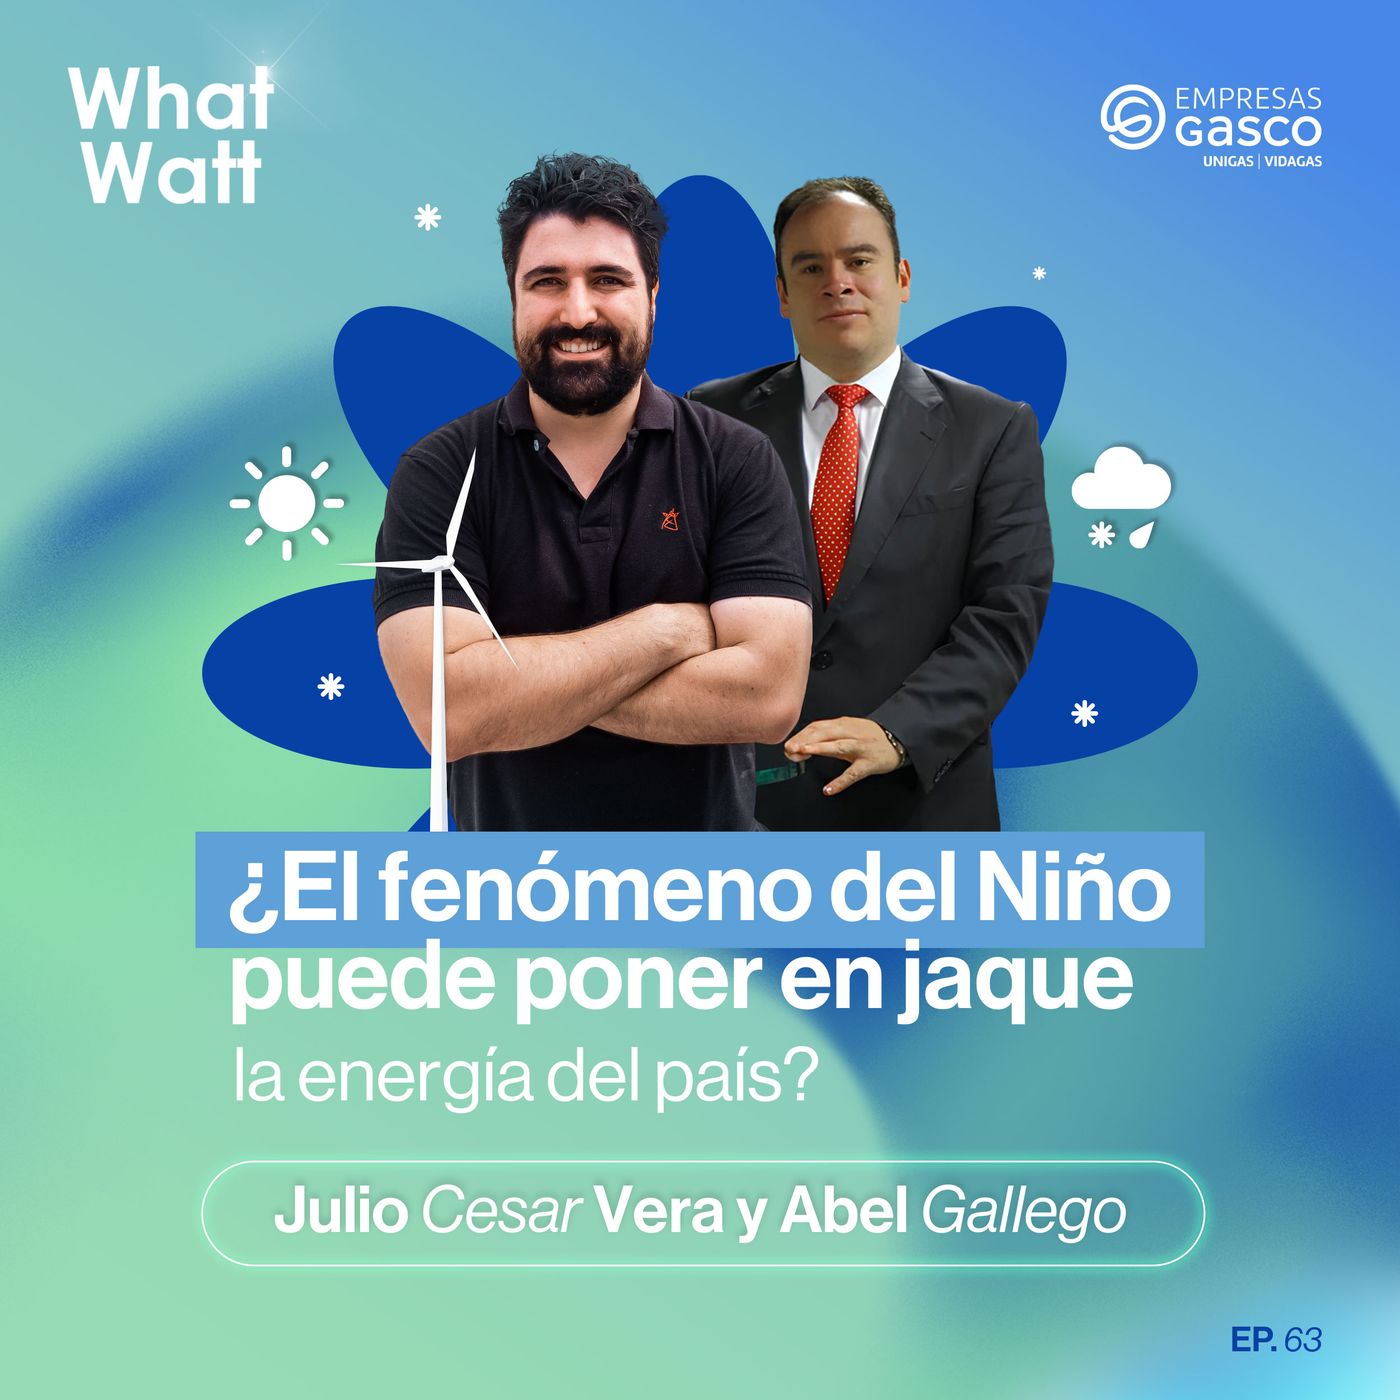 EP. 63: ¿El fenómeno del Niño puede poner en jaque la energía del país? Con Julio Cesar Vera y Abel Gallego